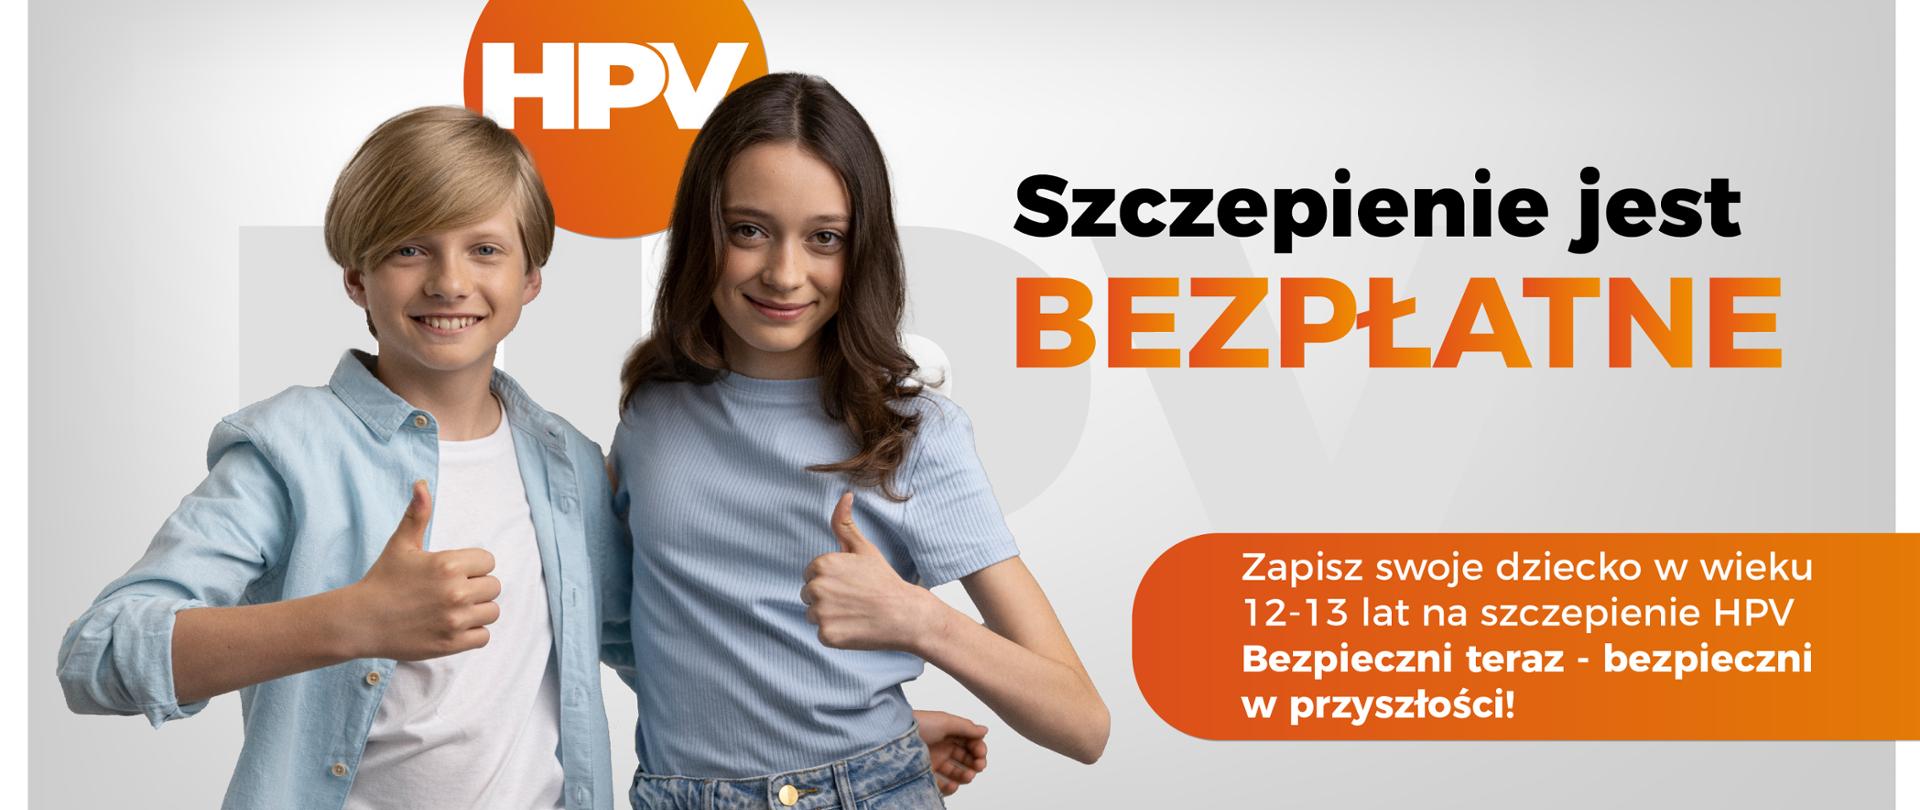 Plakat kampanii promującej szczepienia przeciwko HPV